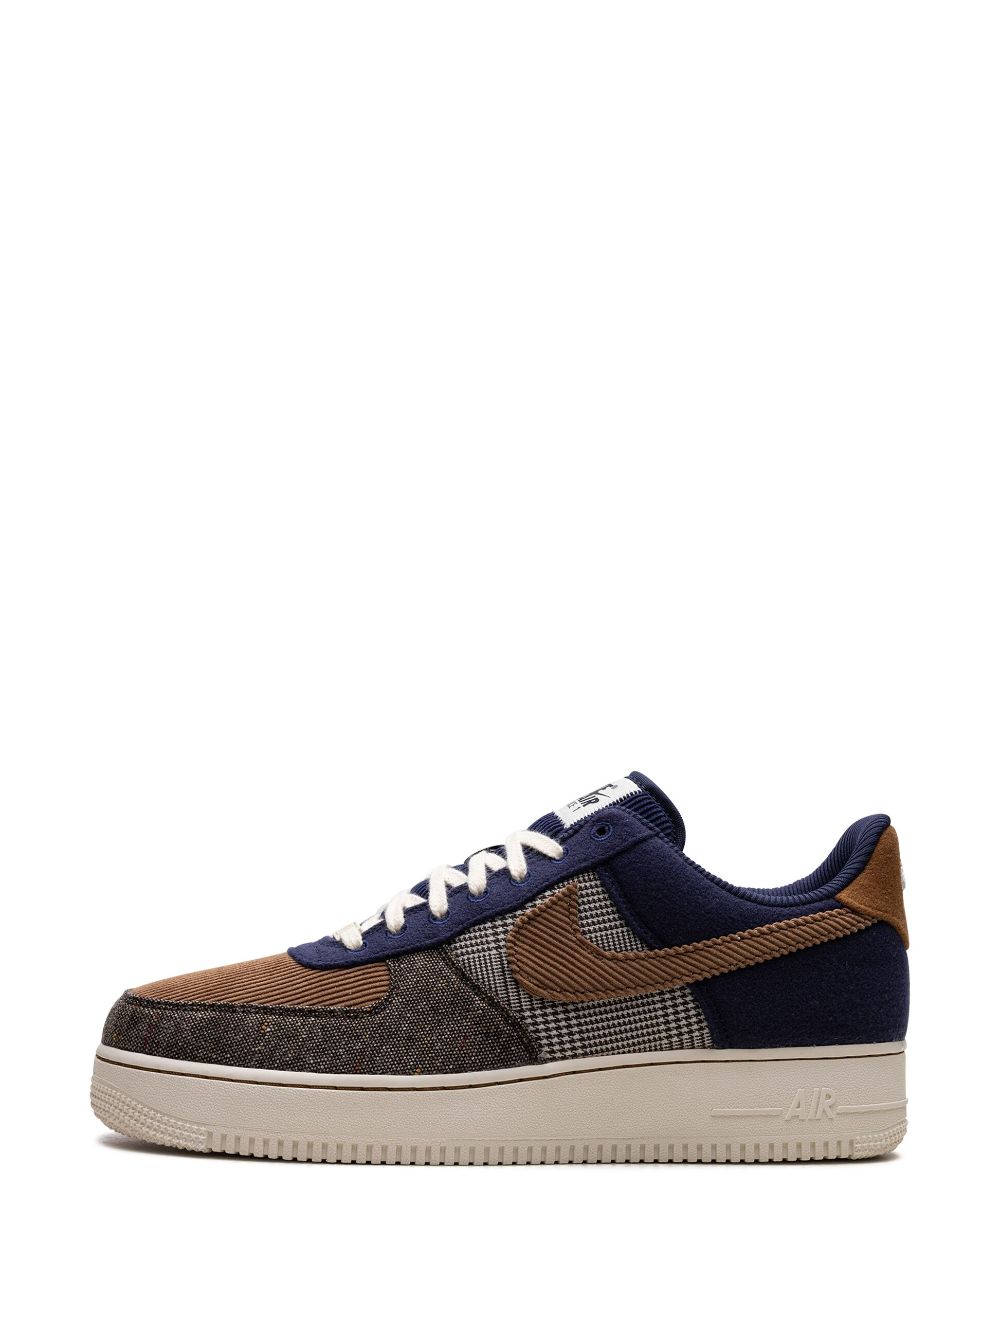 Shop Nike Air Force 1 "07 Premium Tweed Corduroy" Sneakers In Brown